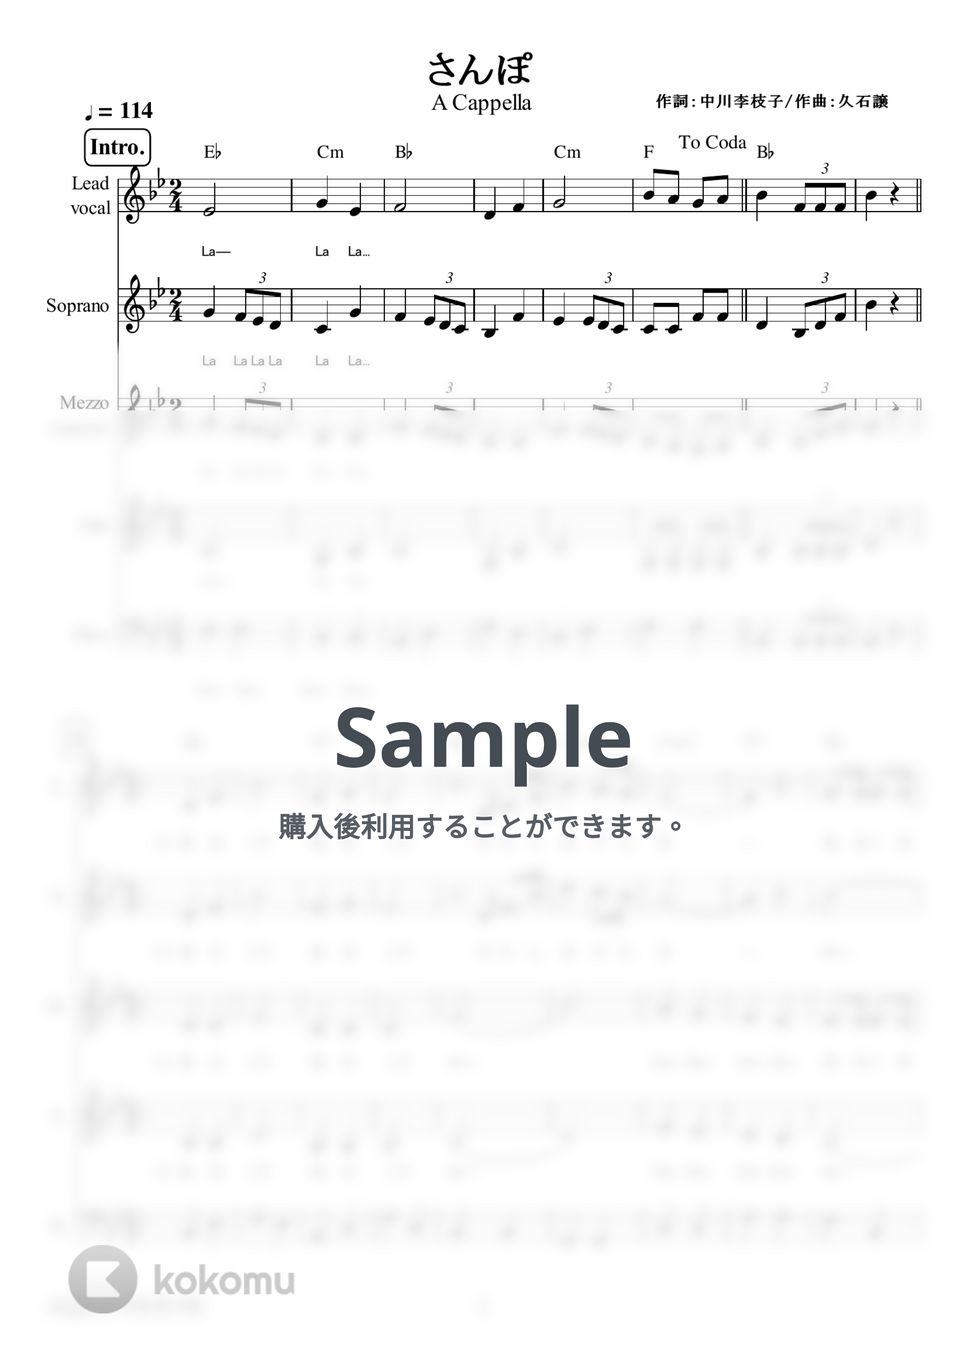 井上 あずみ - さんぽ (アカペラ楽譜♪５声ボイパなし) by 飯田 亜紗子